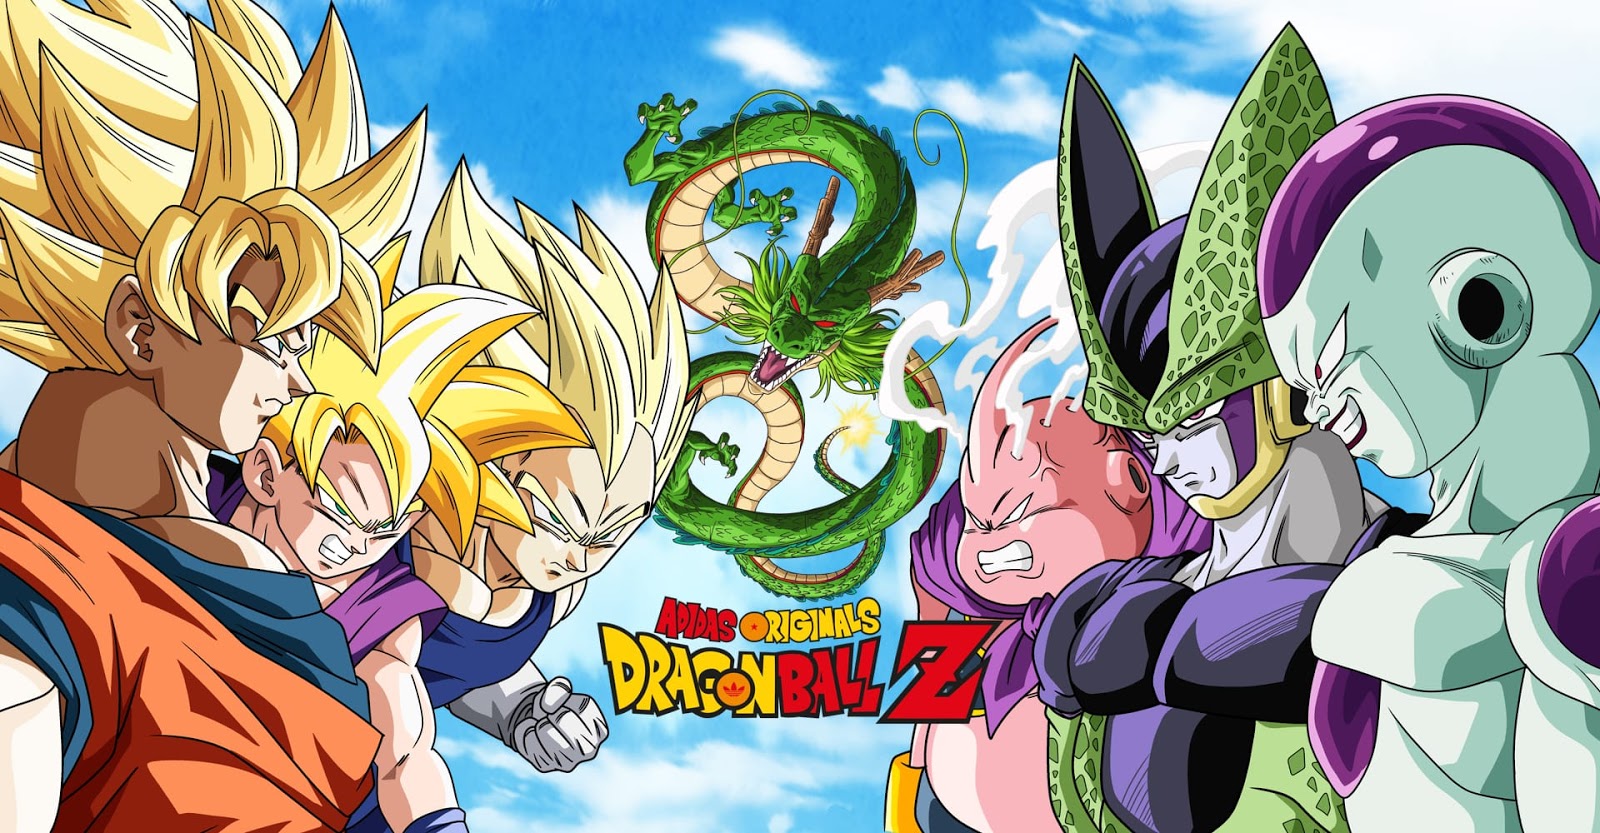 dragon ball z season 1 1080p download english dubbed